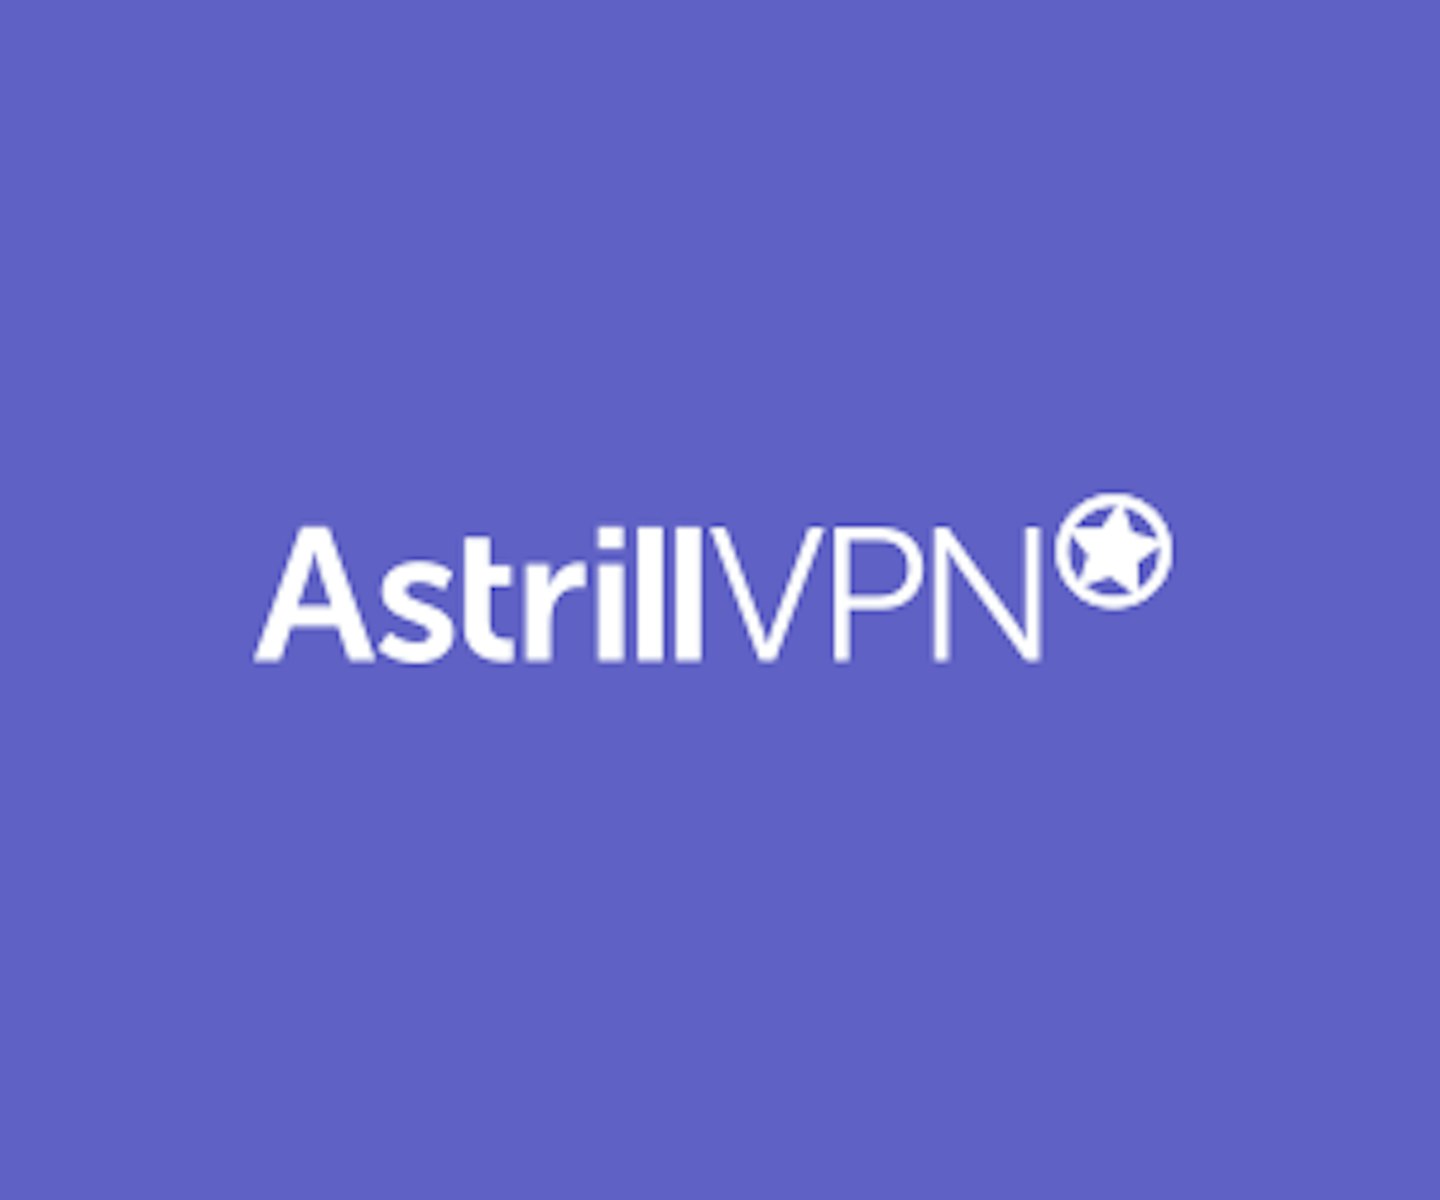 Astrill VPN Logo